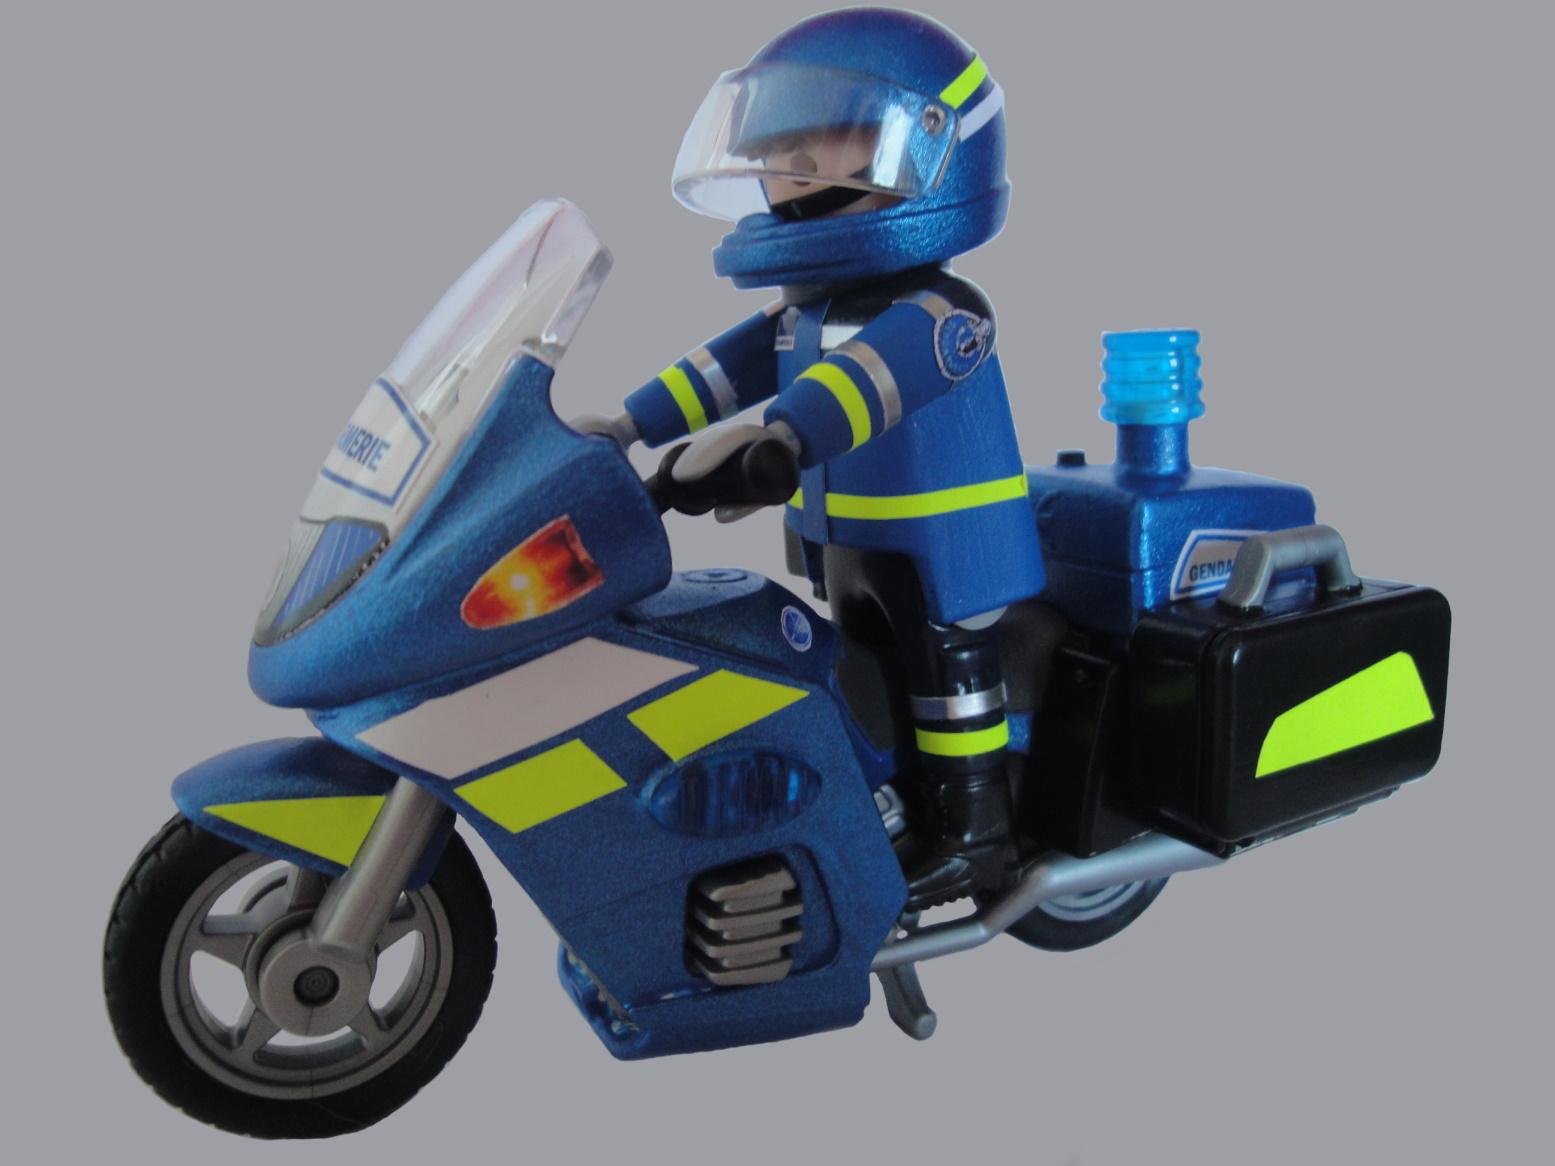 Playmobil moto tráfico Gendarmerie francesa hombre mujer: